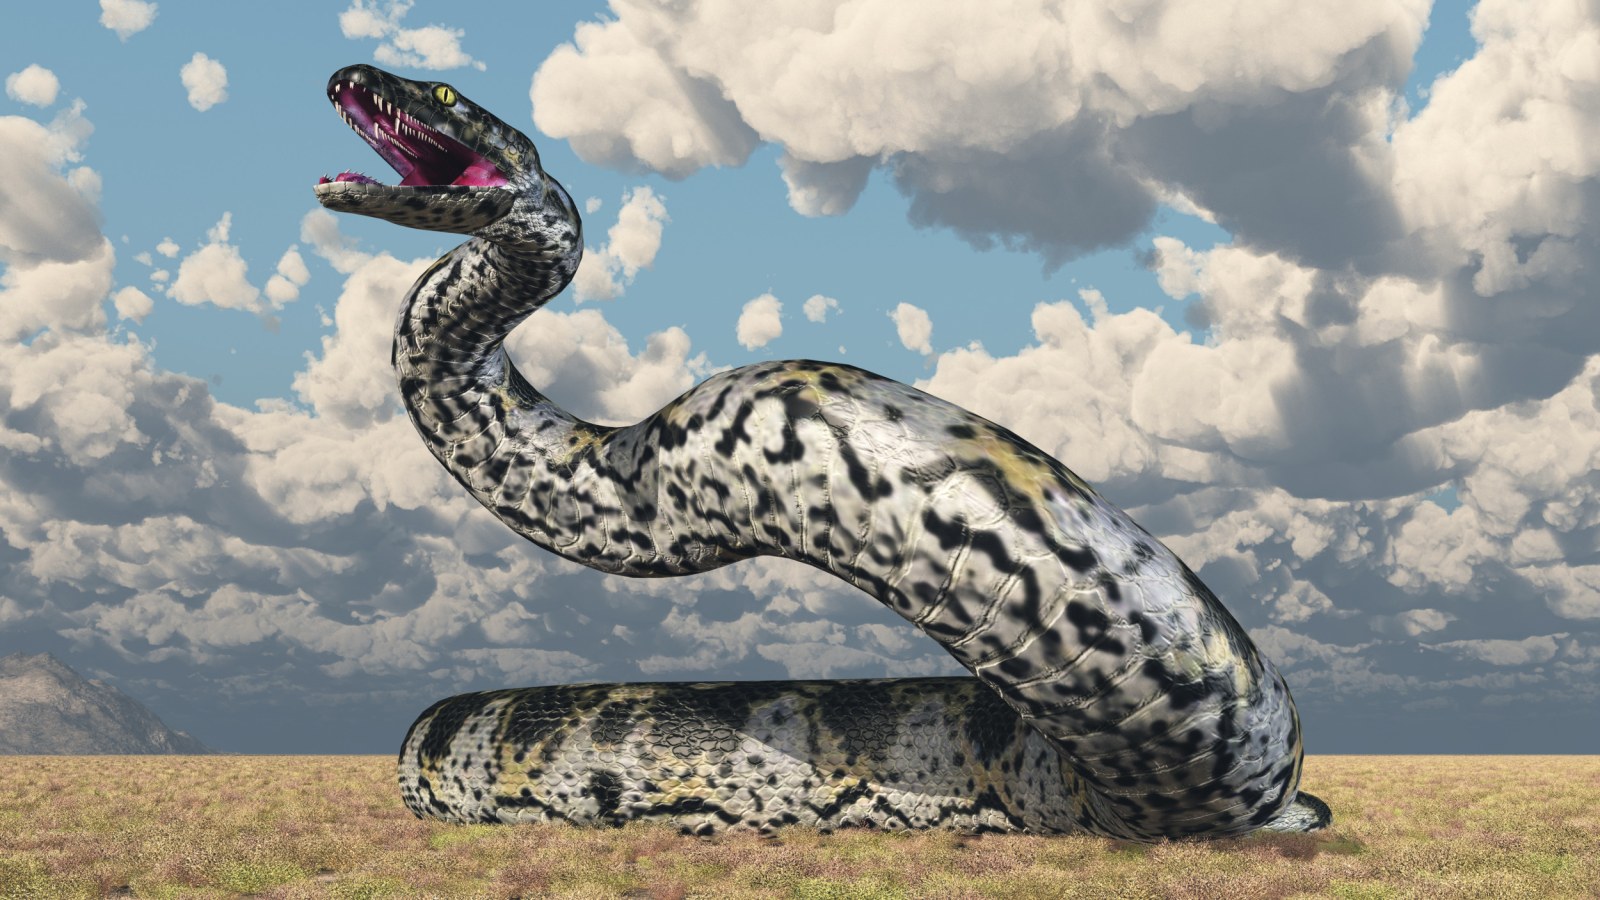 biggest snake in the world megalodon